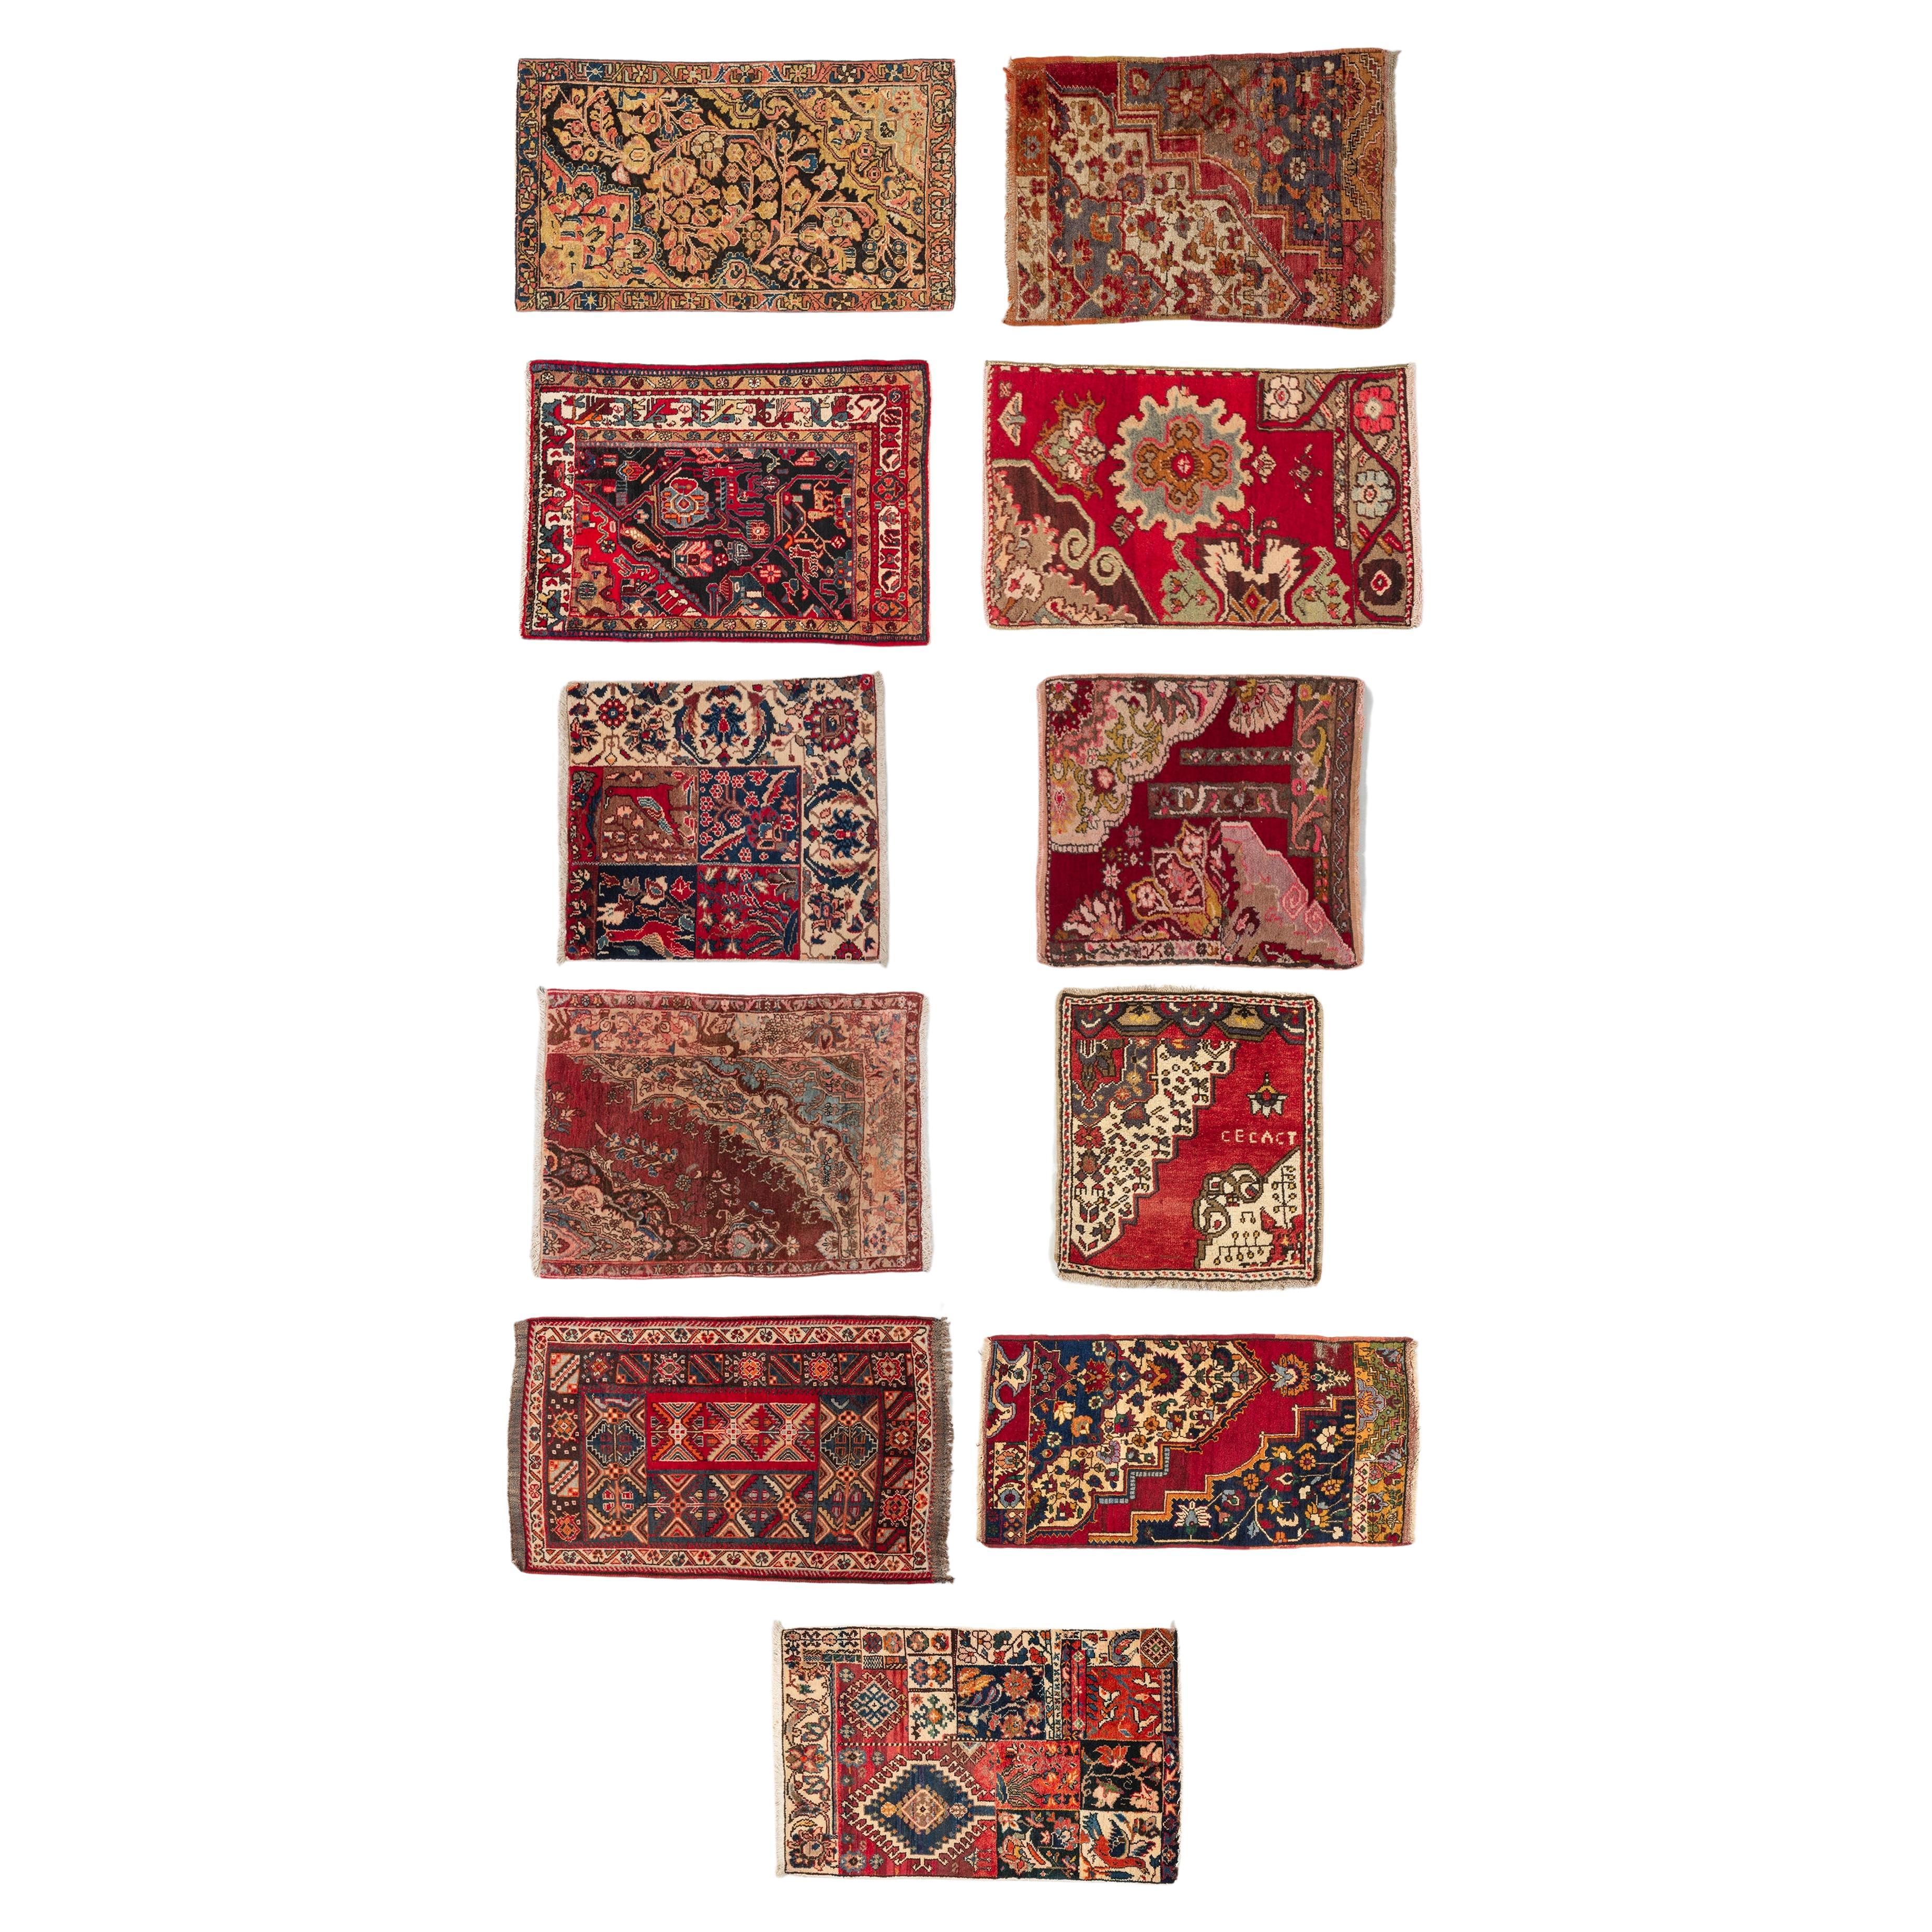 Private Sammlung antiker „Vaghireh“ Teppich-Sammlerstücke aus der Privatsammlung